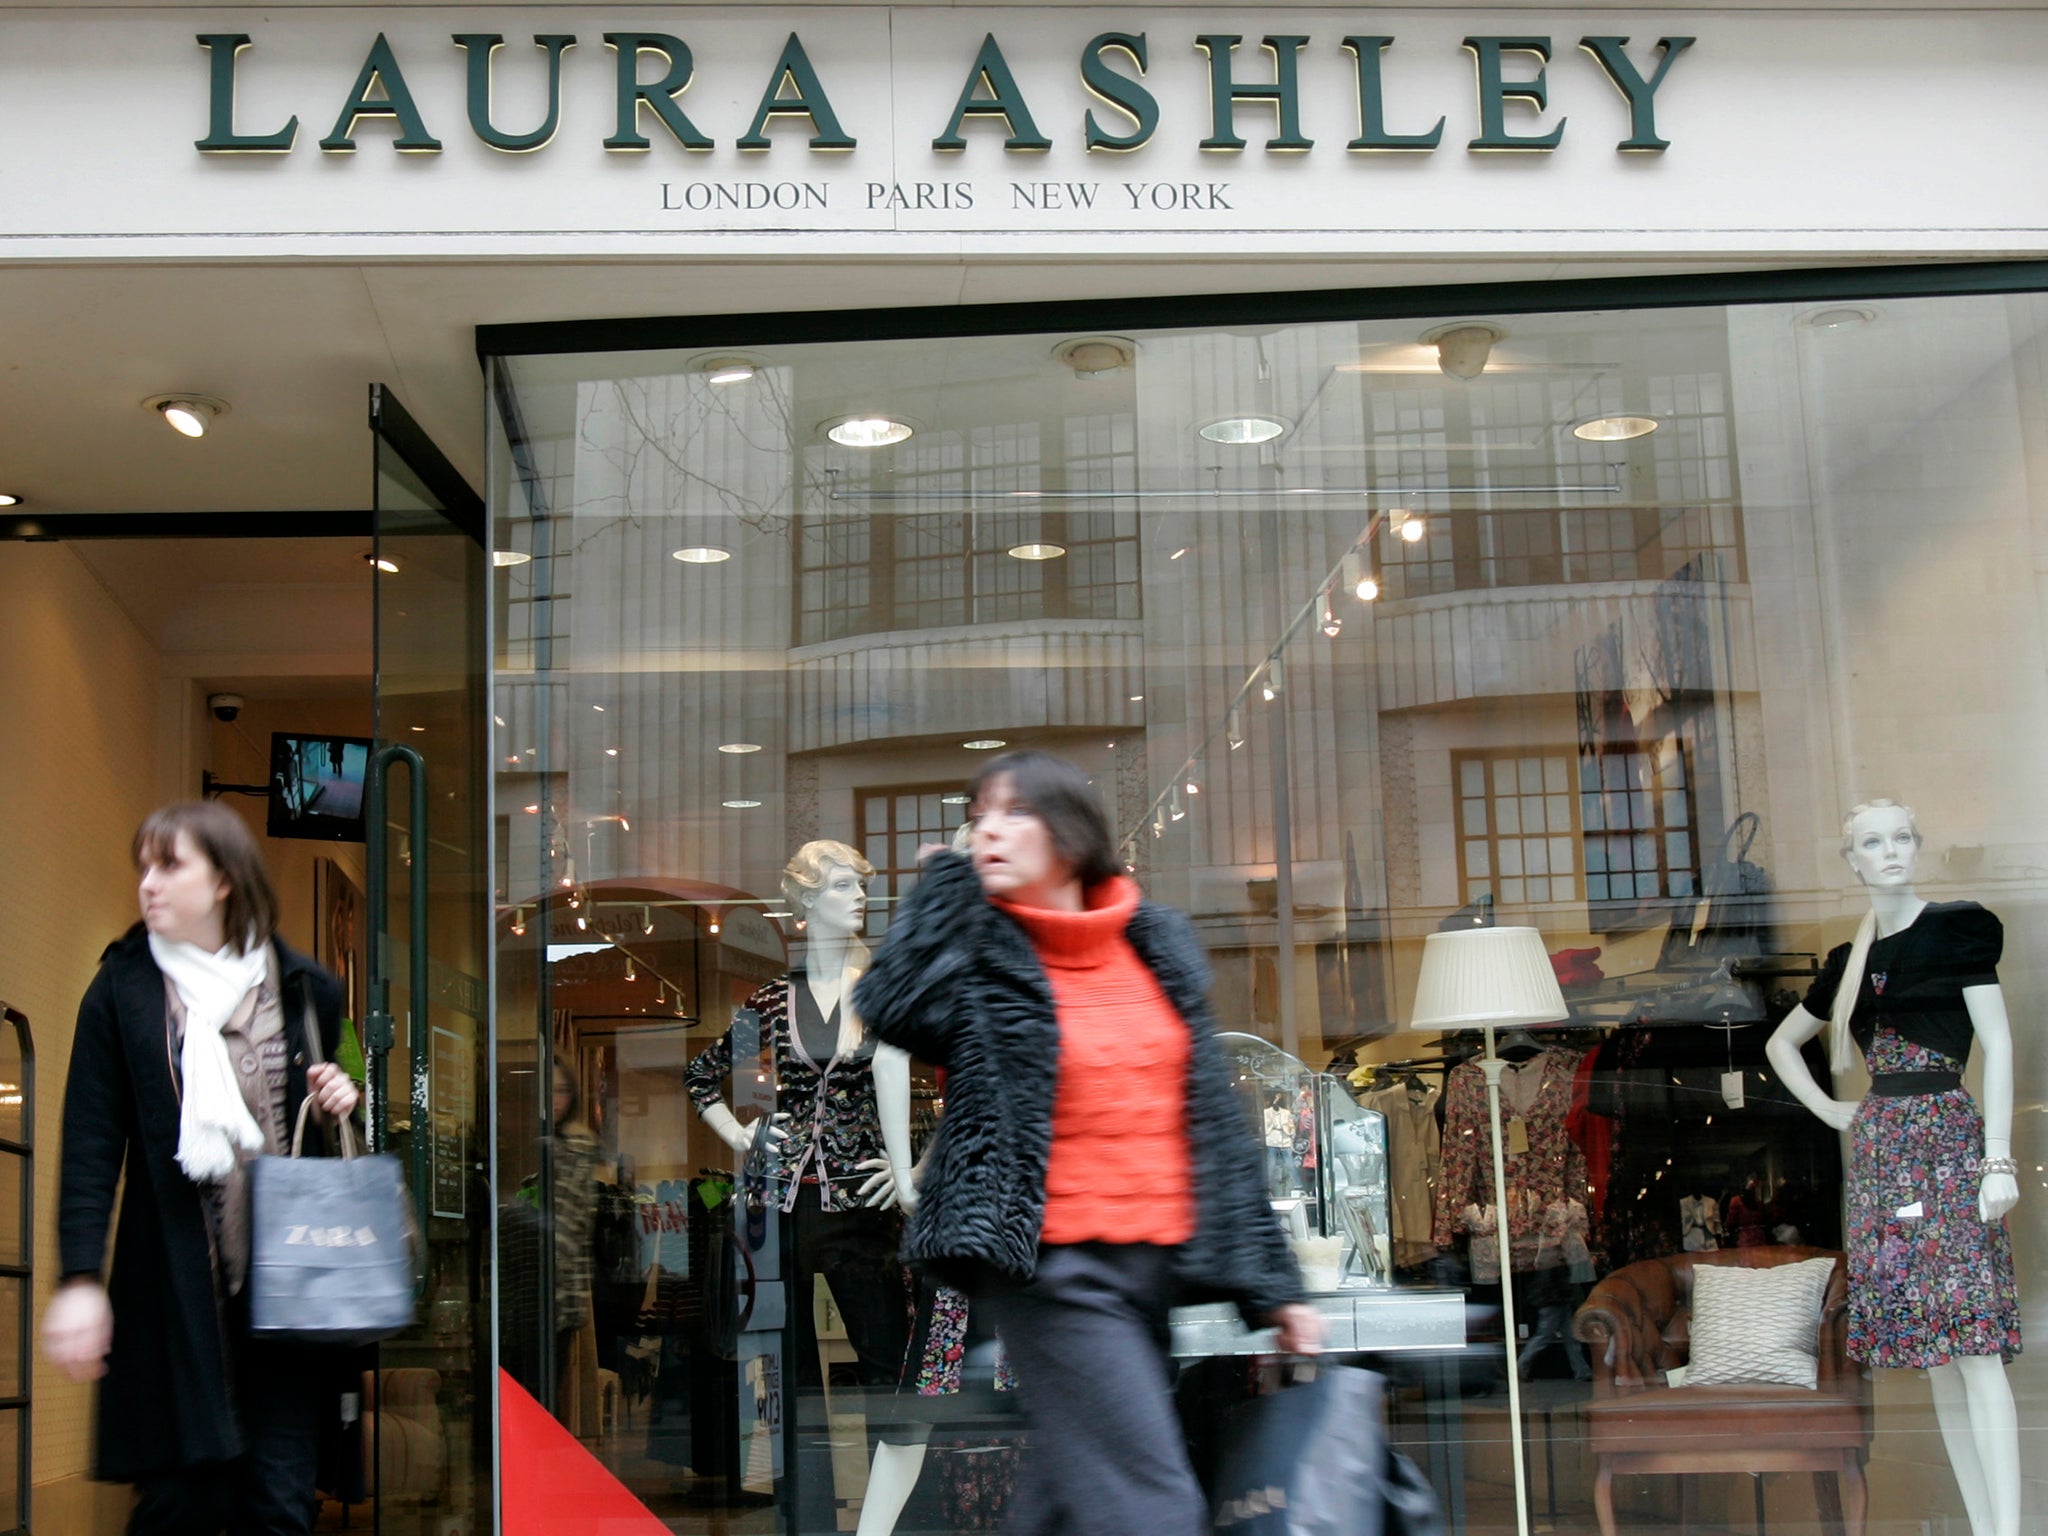 Laura Ashley has struggled to secure extra funding